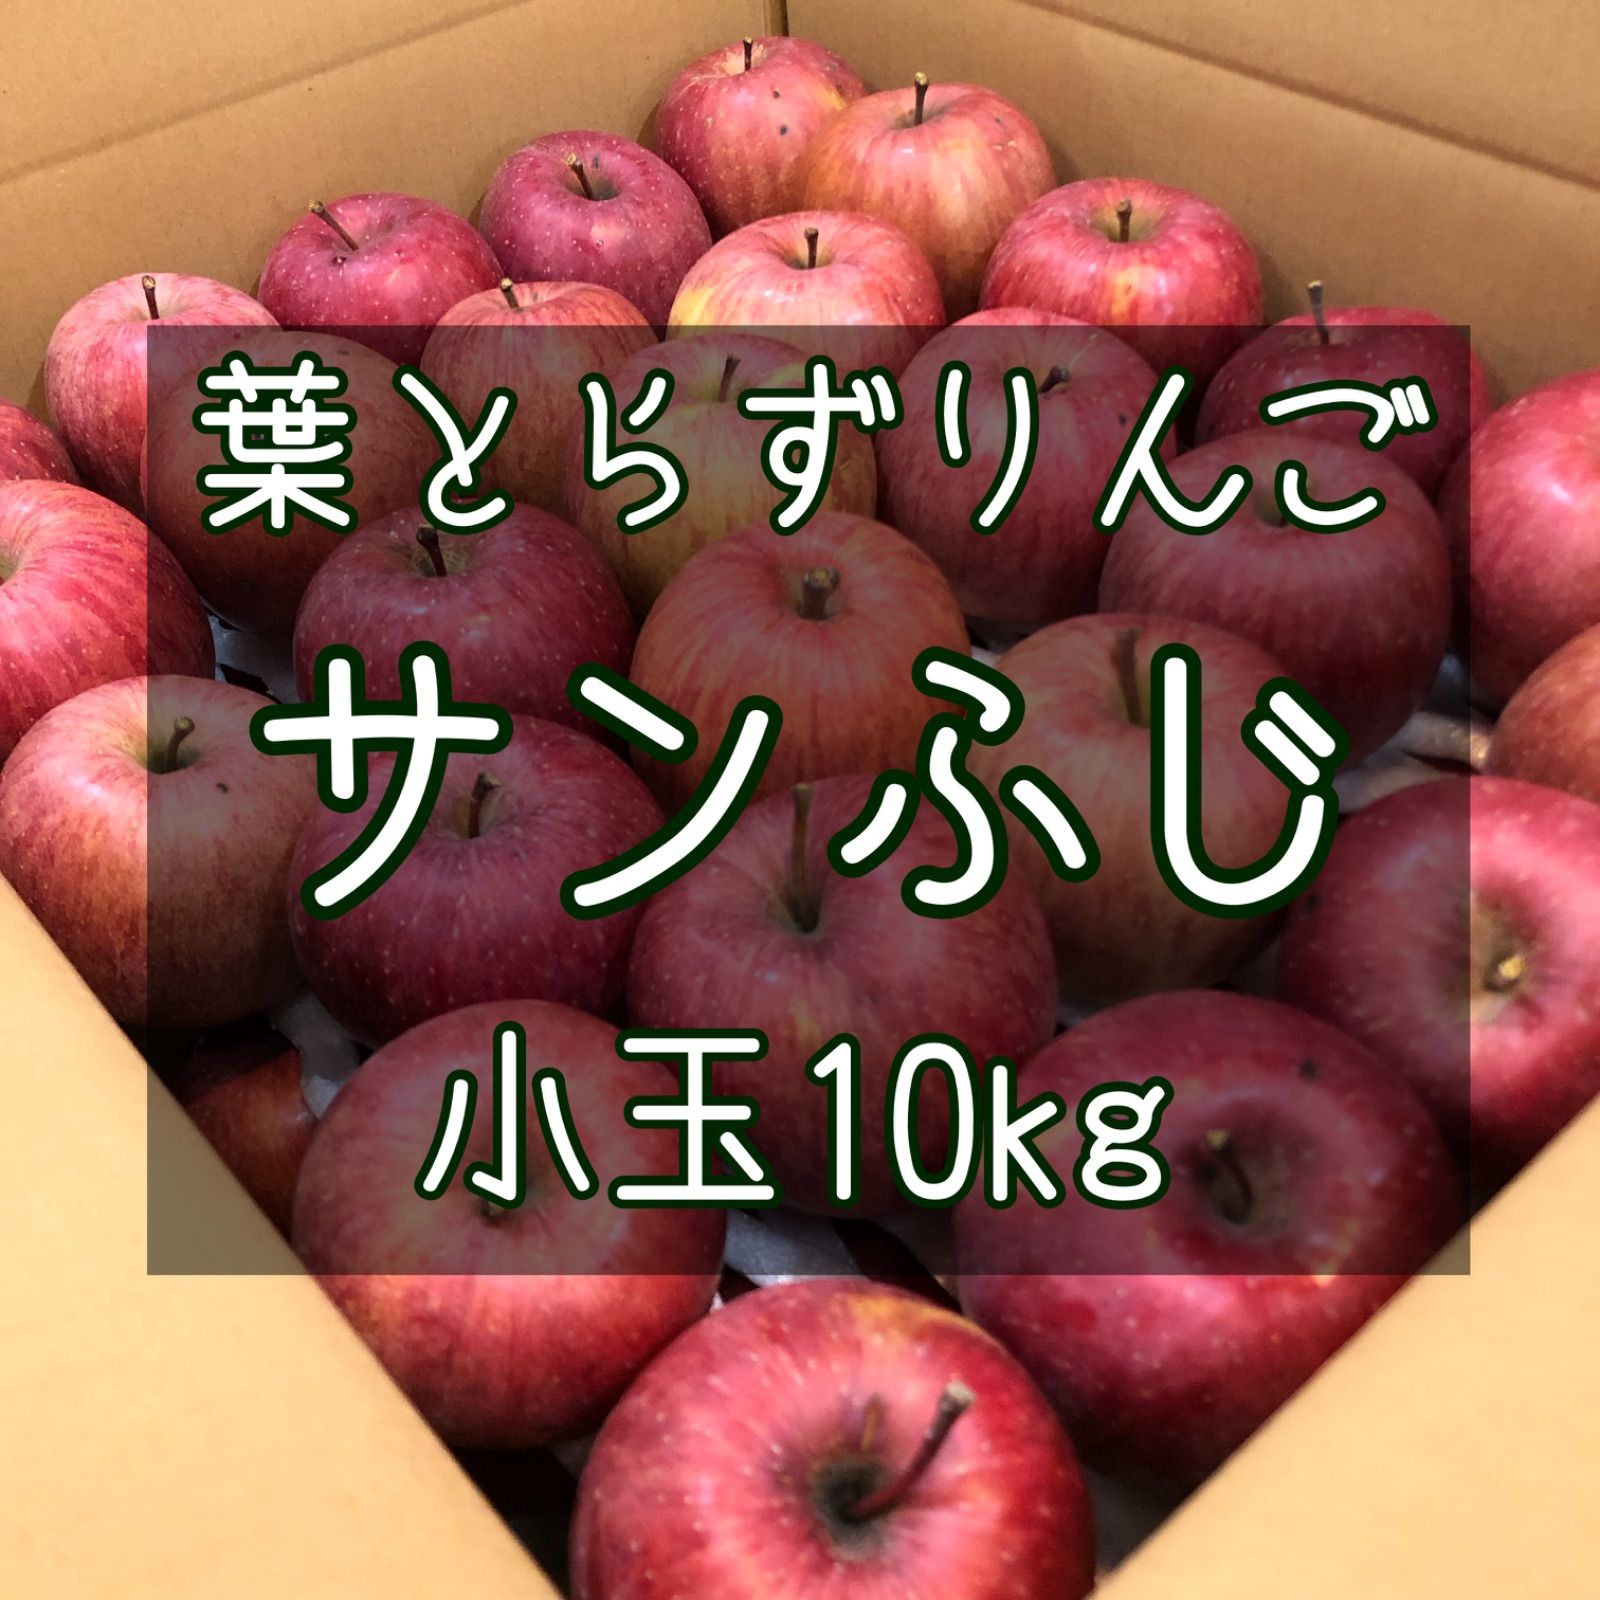 青森りんご 葉とらず サンふじ 小玉10kg-0